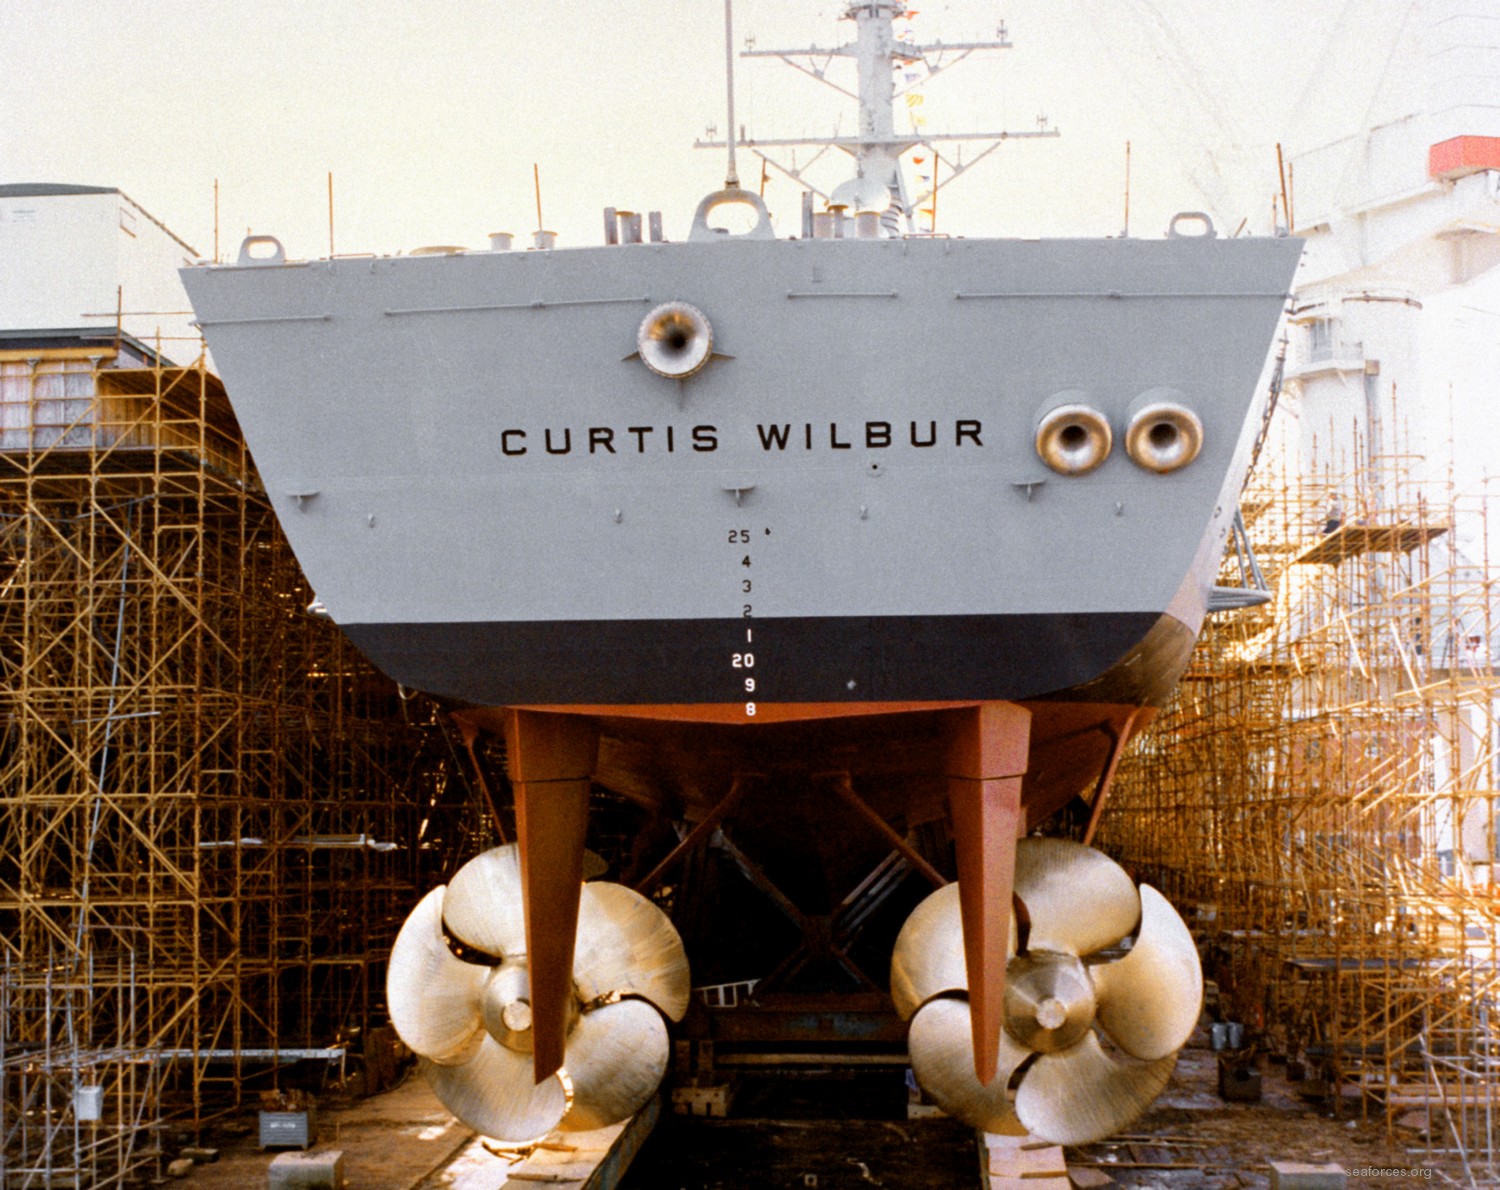 ddg-54 uss curtis wilbur destroyer us navy 98